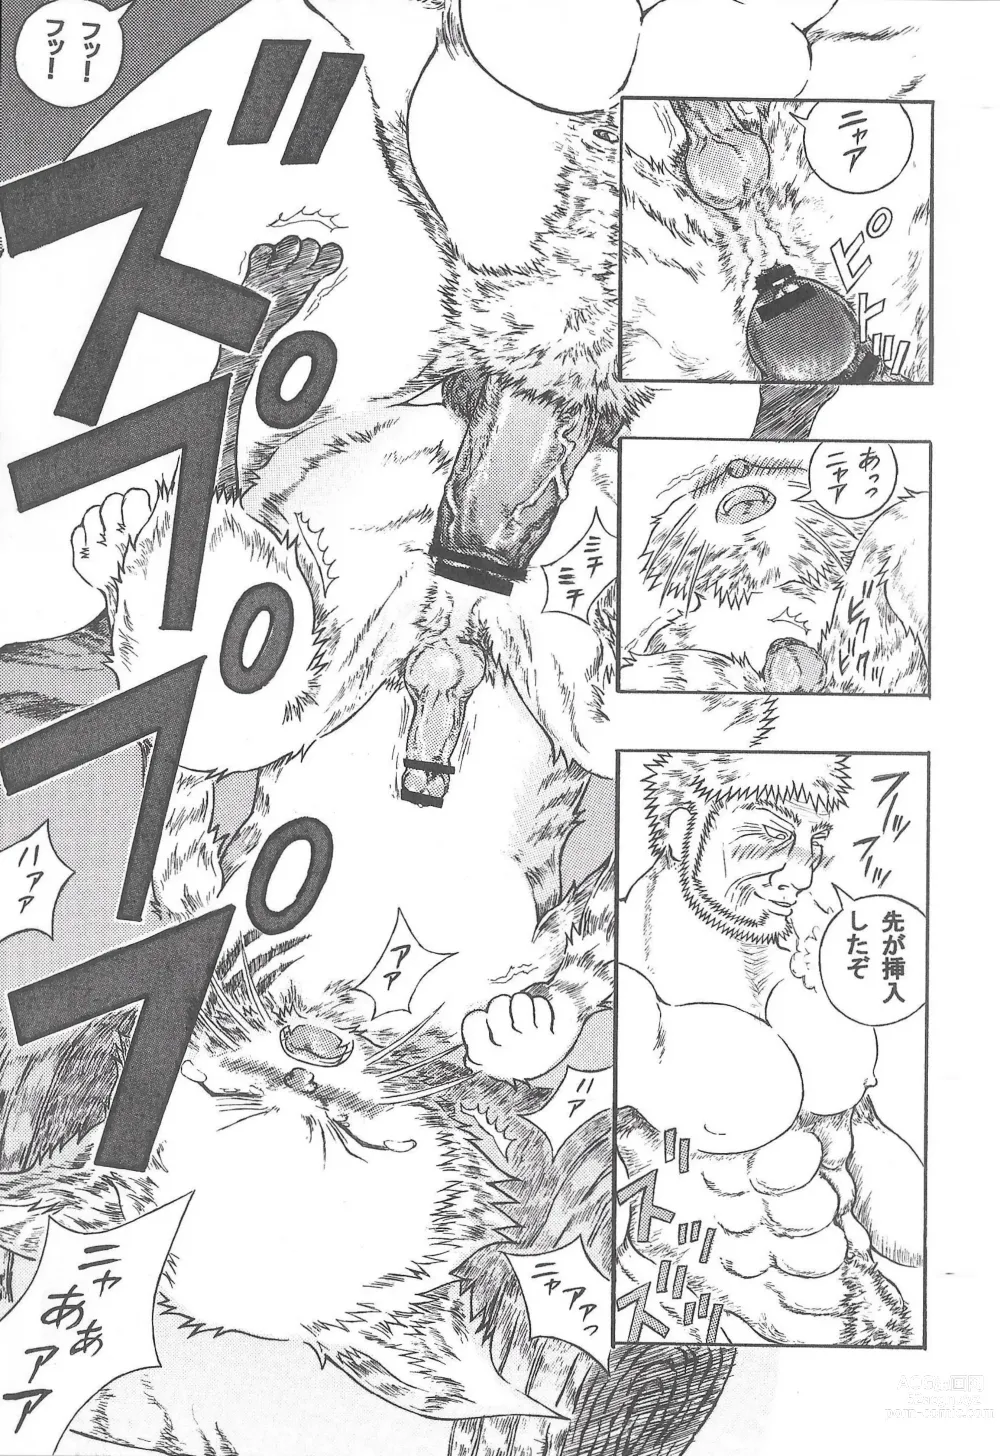 Page 26 of doujinshi Airu Monhun Dream